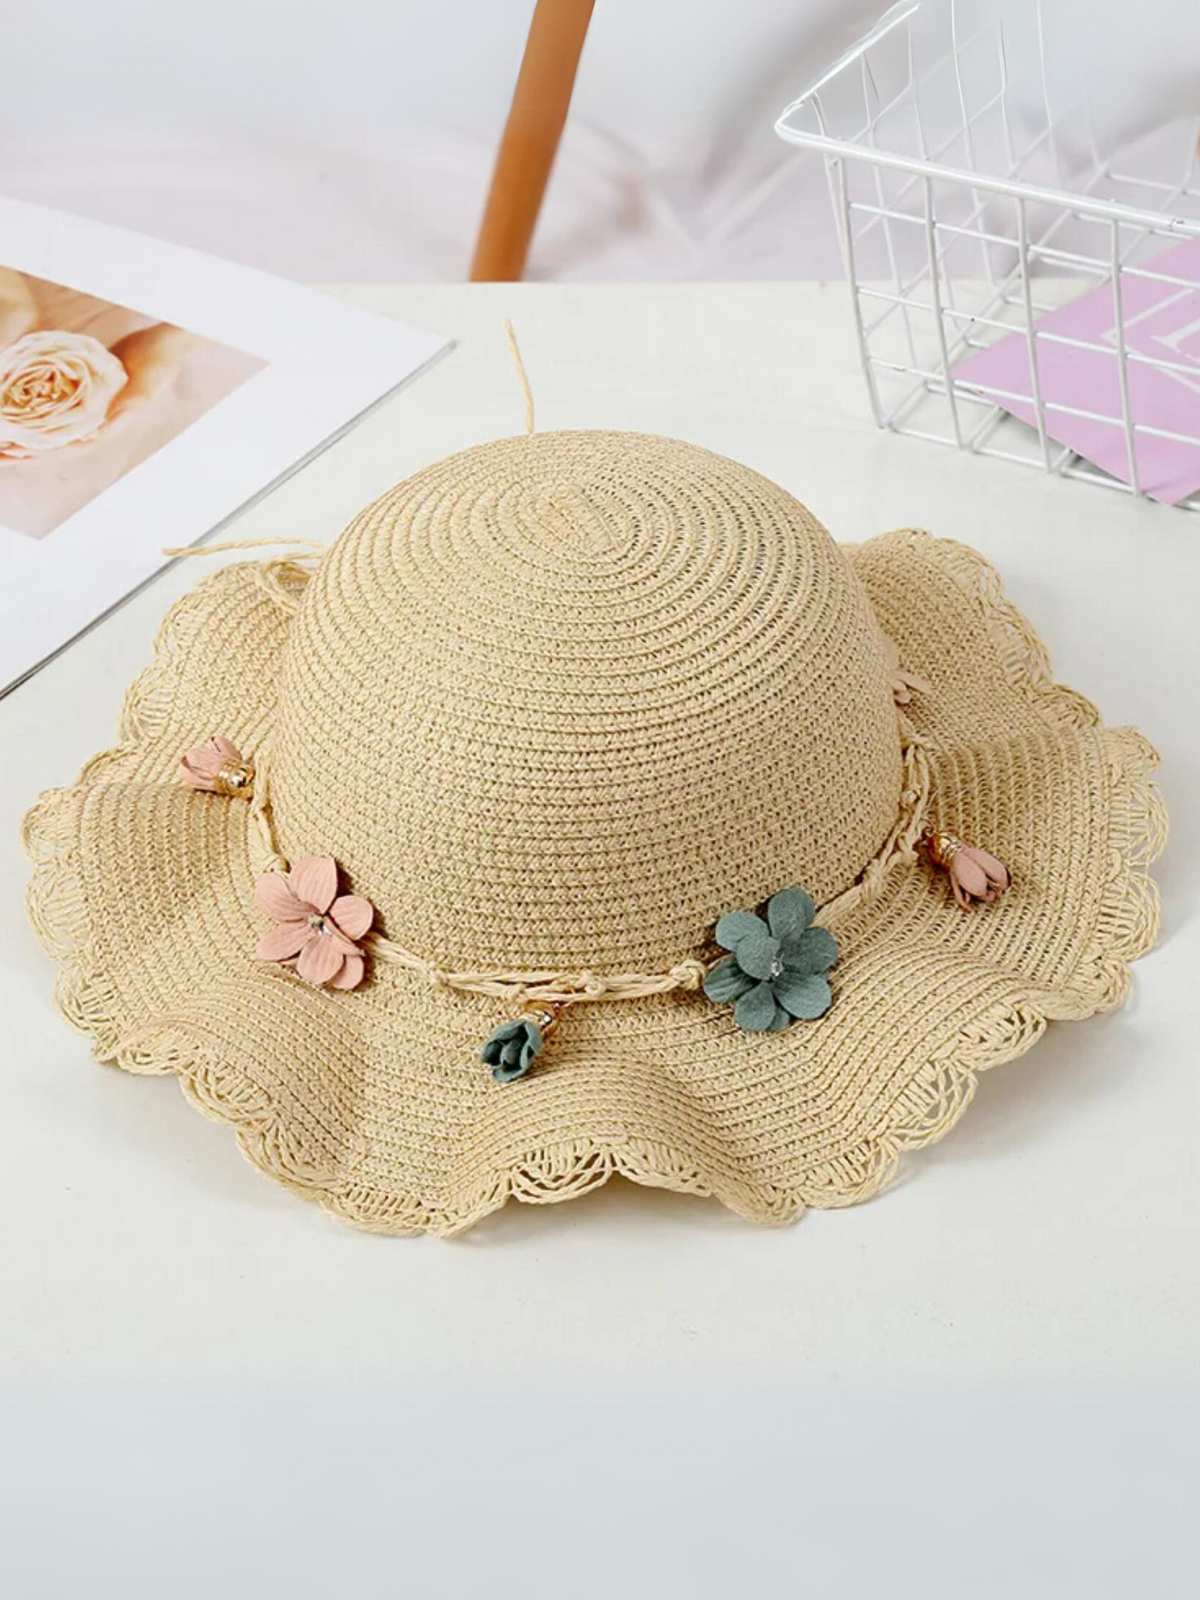 Mia Belle Girls Floral Straw Hat | Girls Accessories